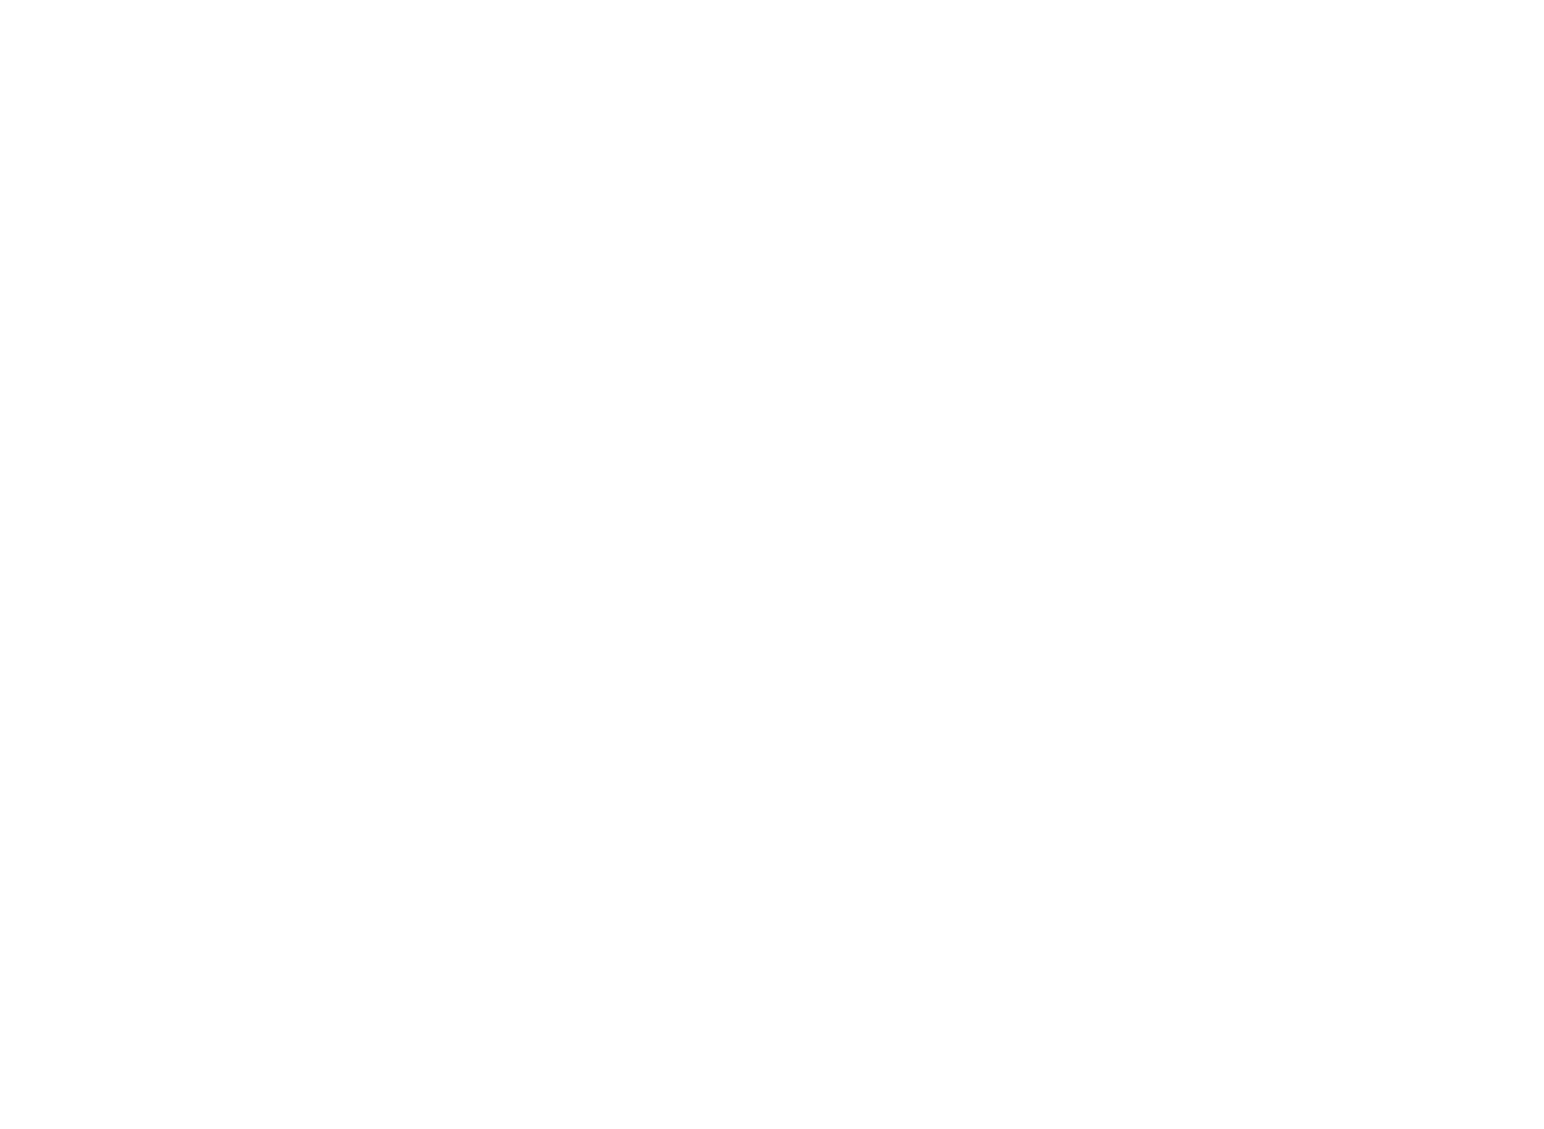 Elis logo for dark backgrounds (transparent PNG)